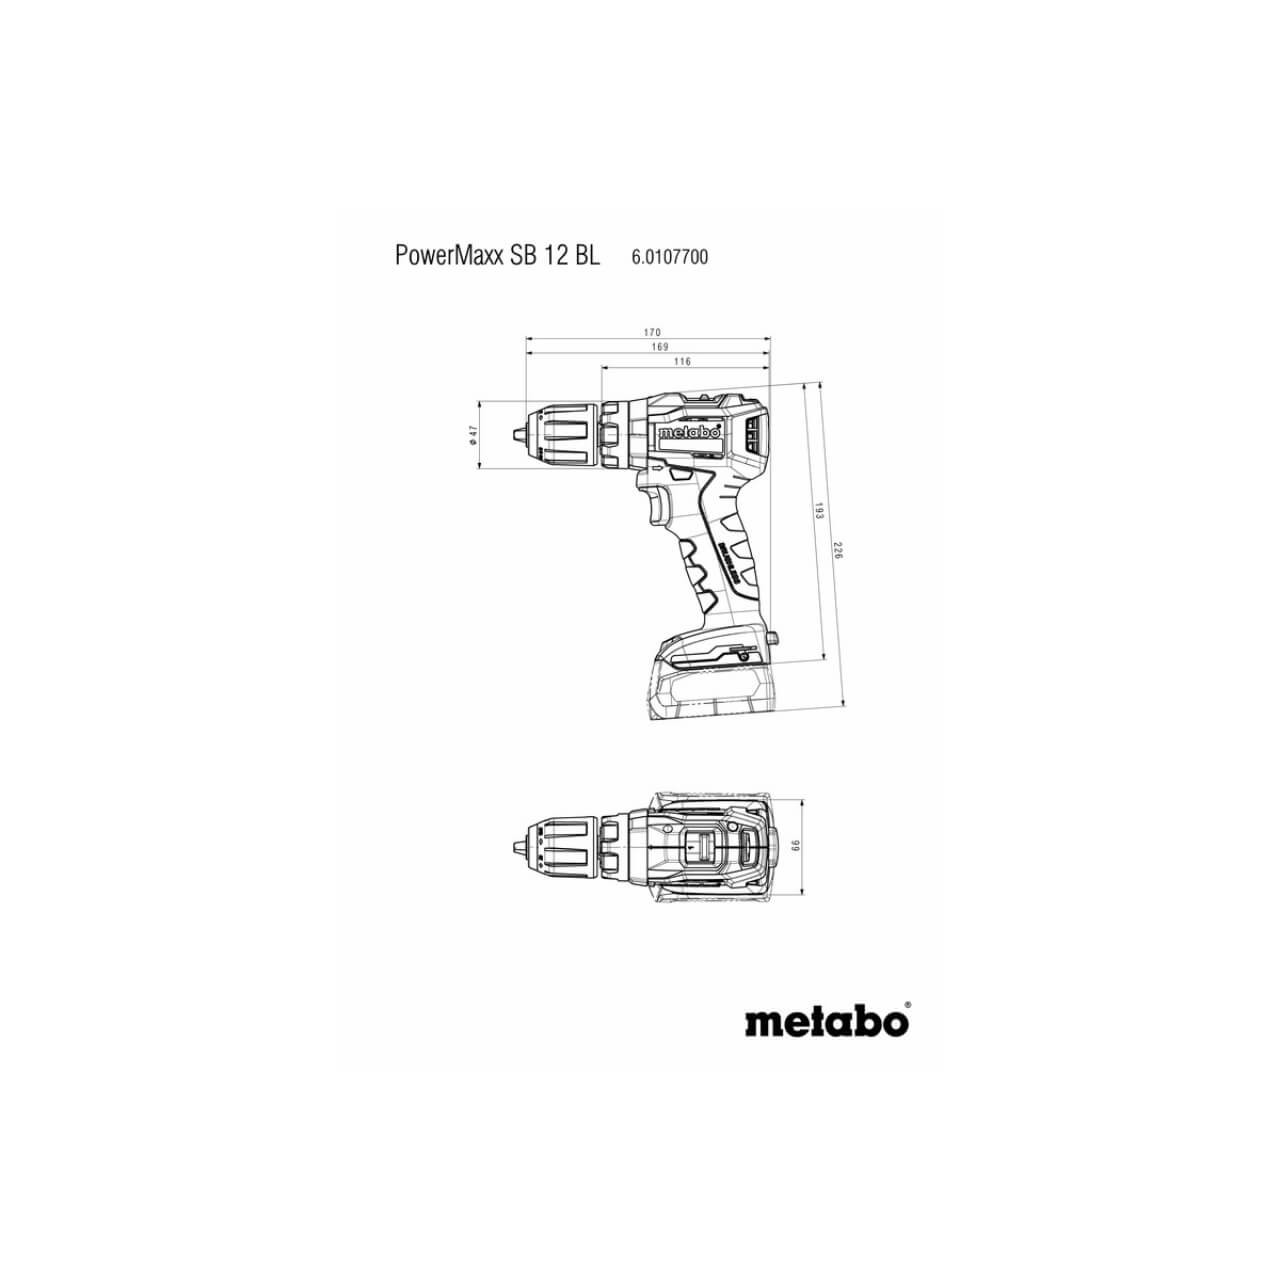 Metabo PowerMaxx SB 12 BL 12V Brushless Hammer Drill 10mm - Skin Only